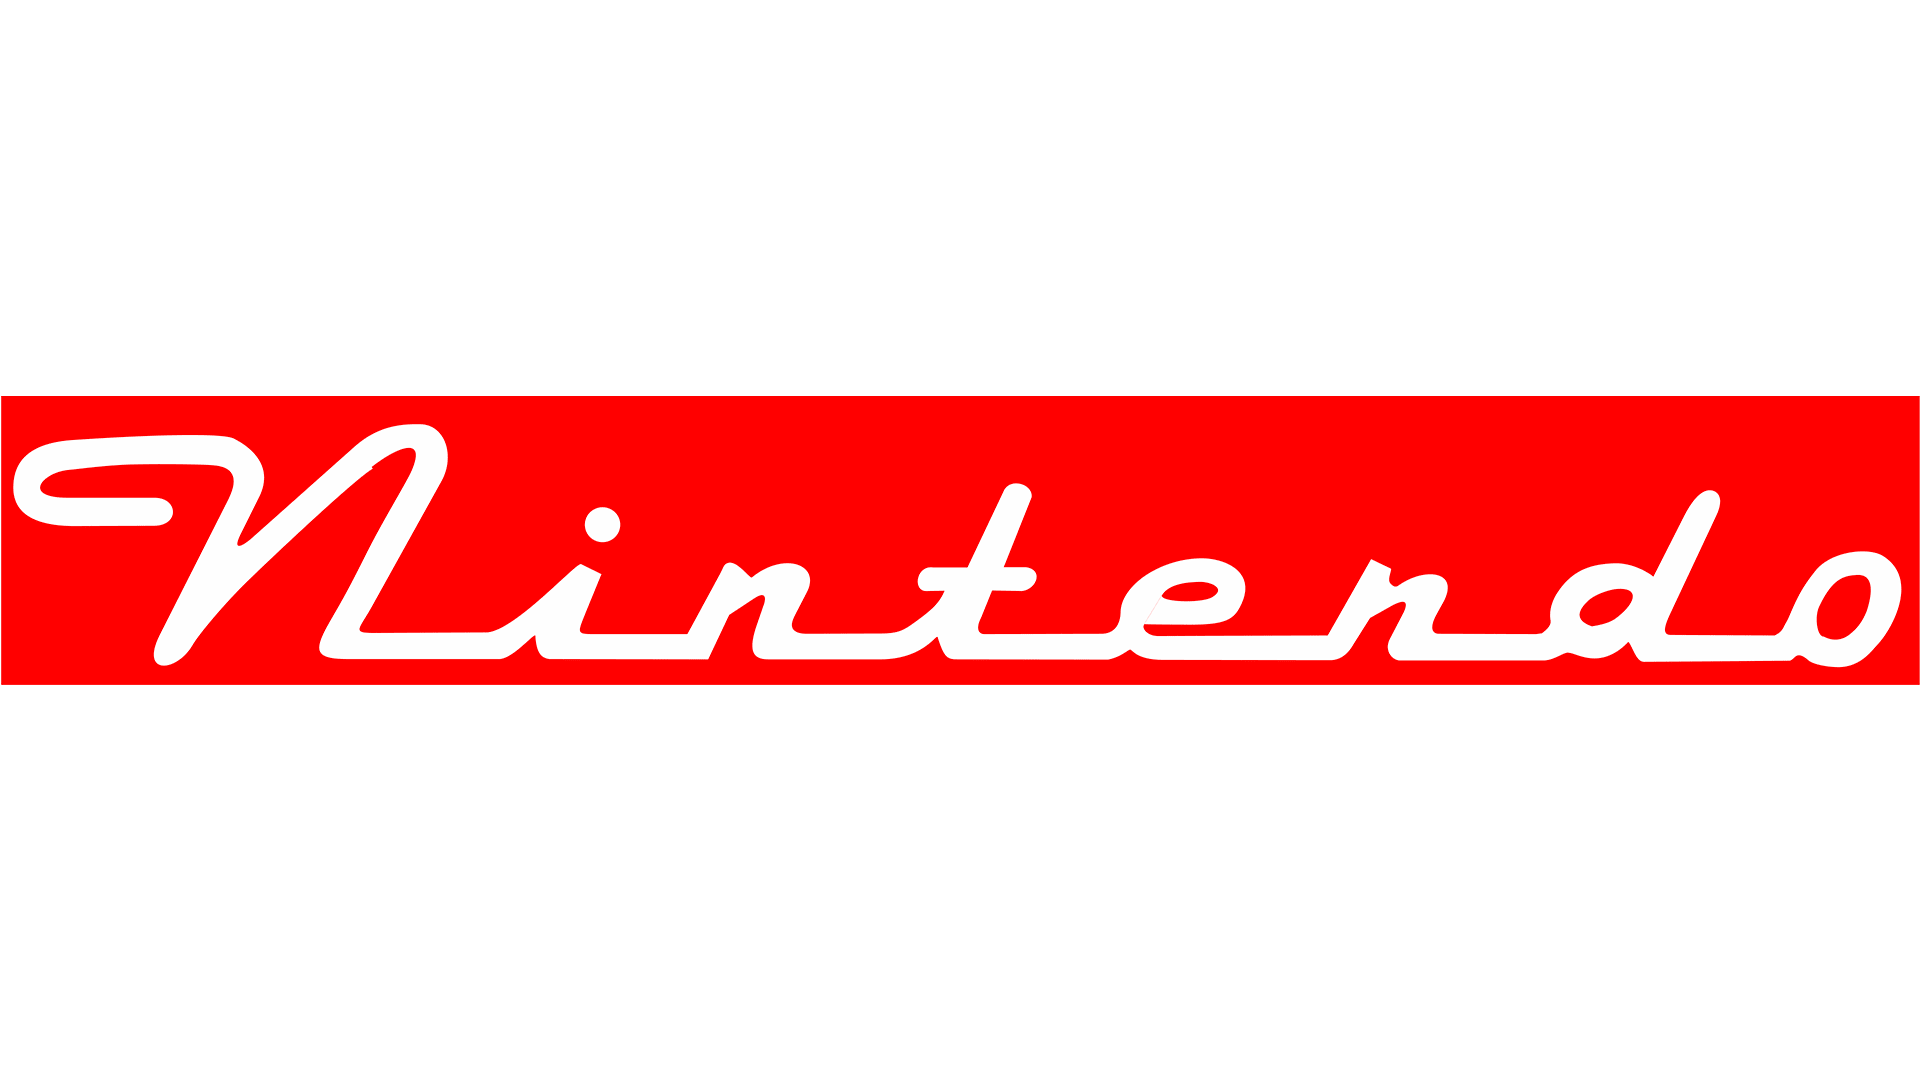 Nintendo Logo PNG